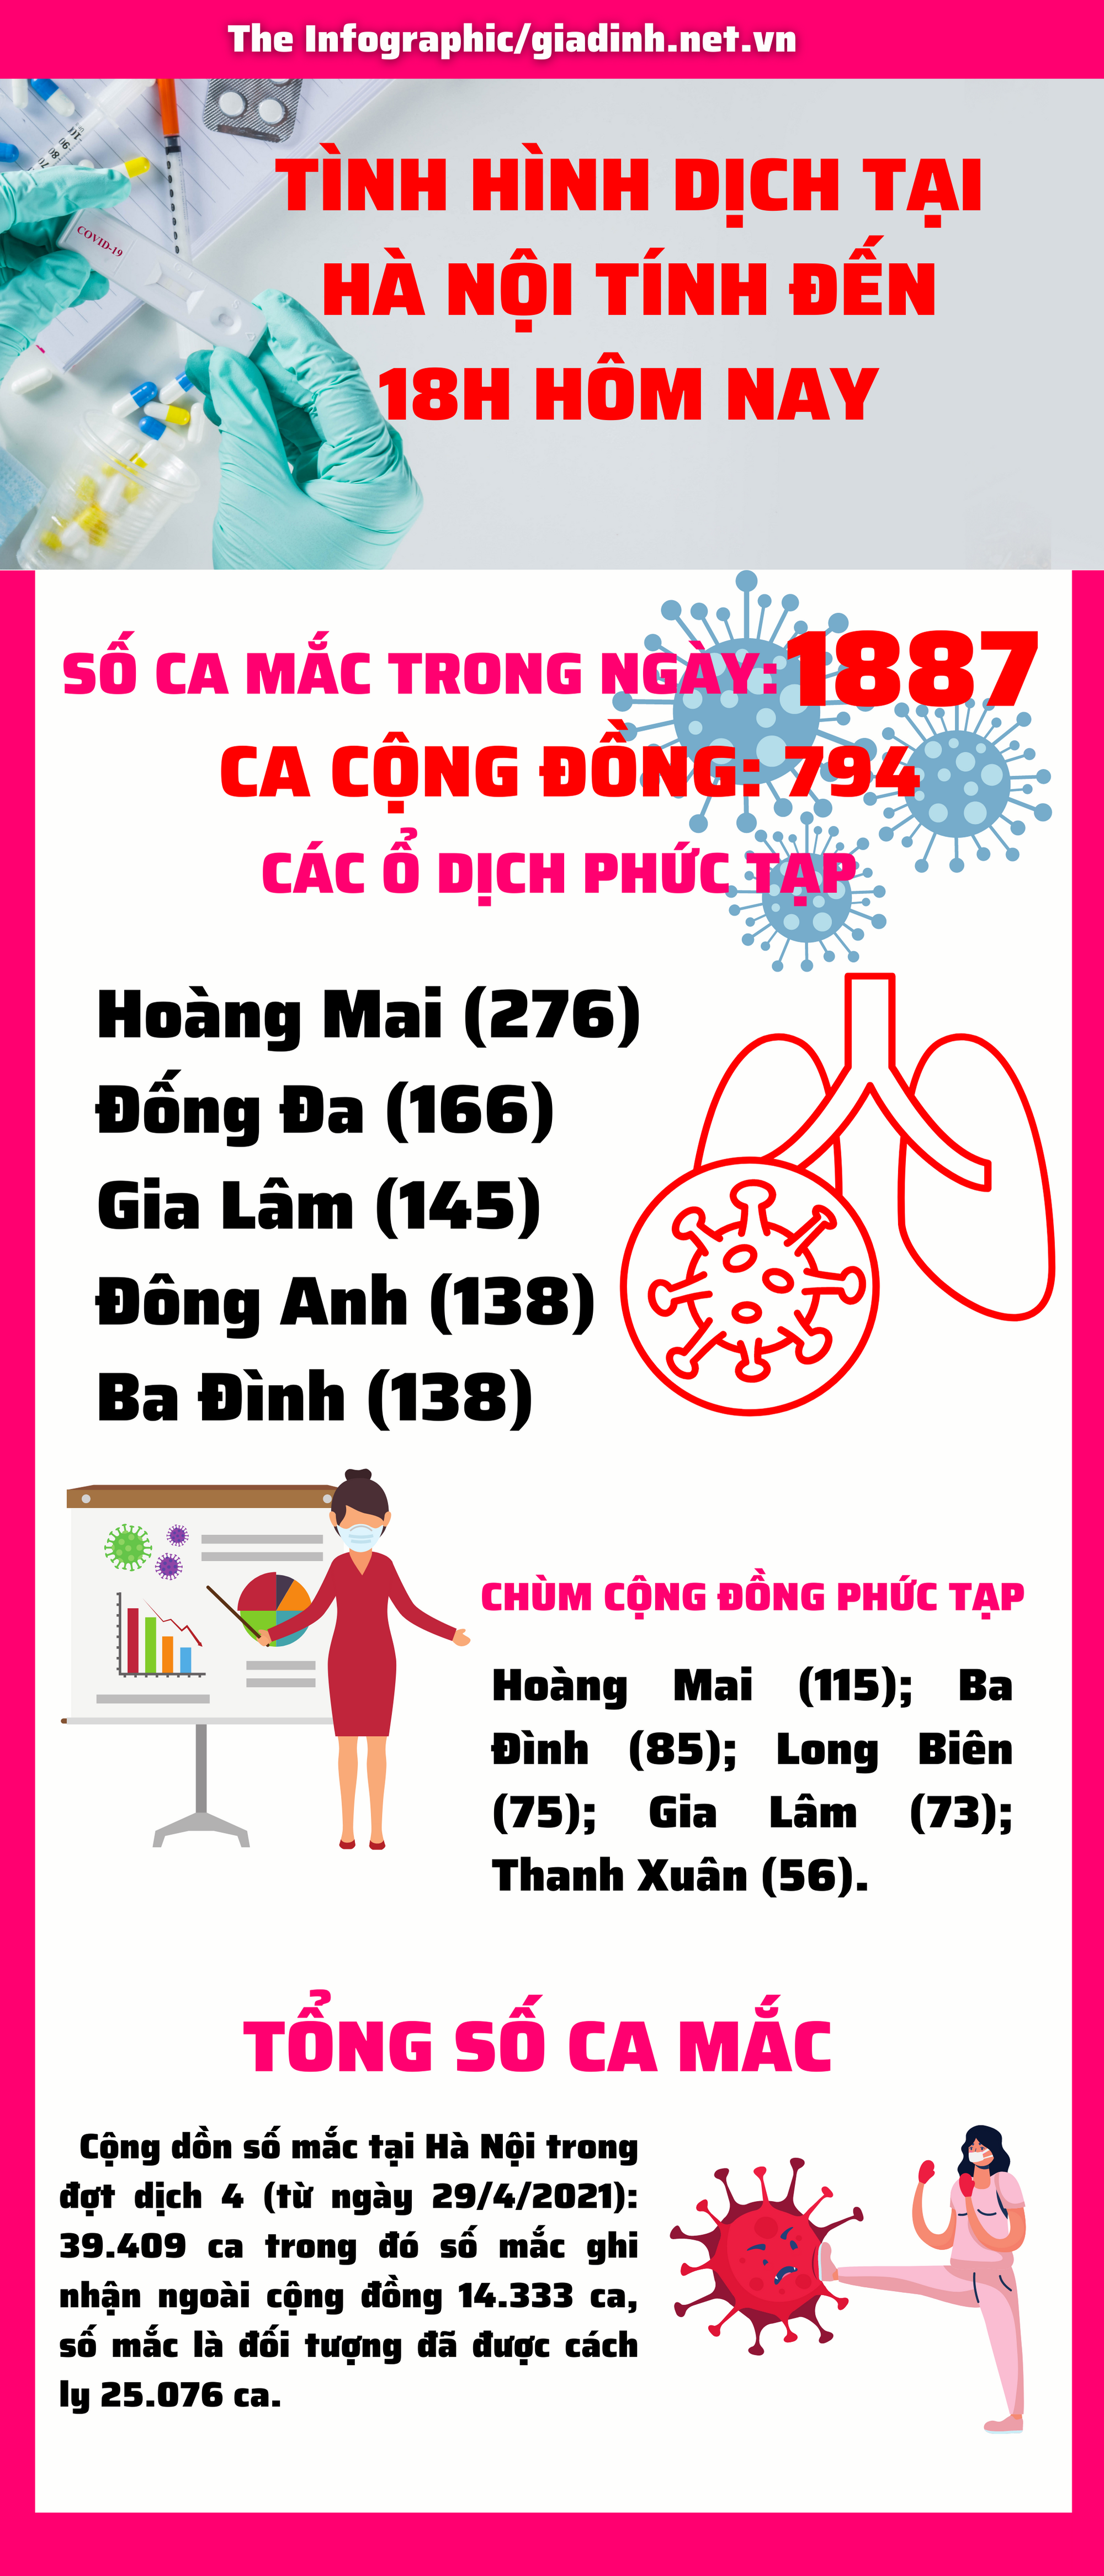 Hà Nội có đến 1887 ca mắc COVID-19 mới, 794 ca mắc cộng đồng, cao nhất từ khi COVID-19 xuất hiện ở Việt Nam - Ảnh 1.